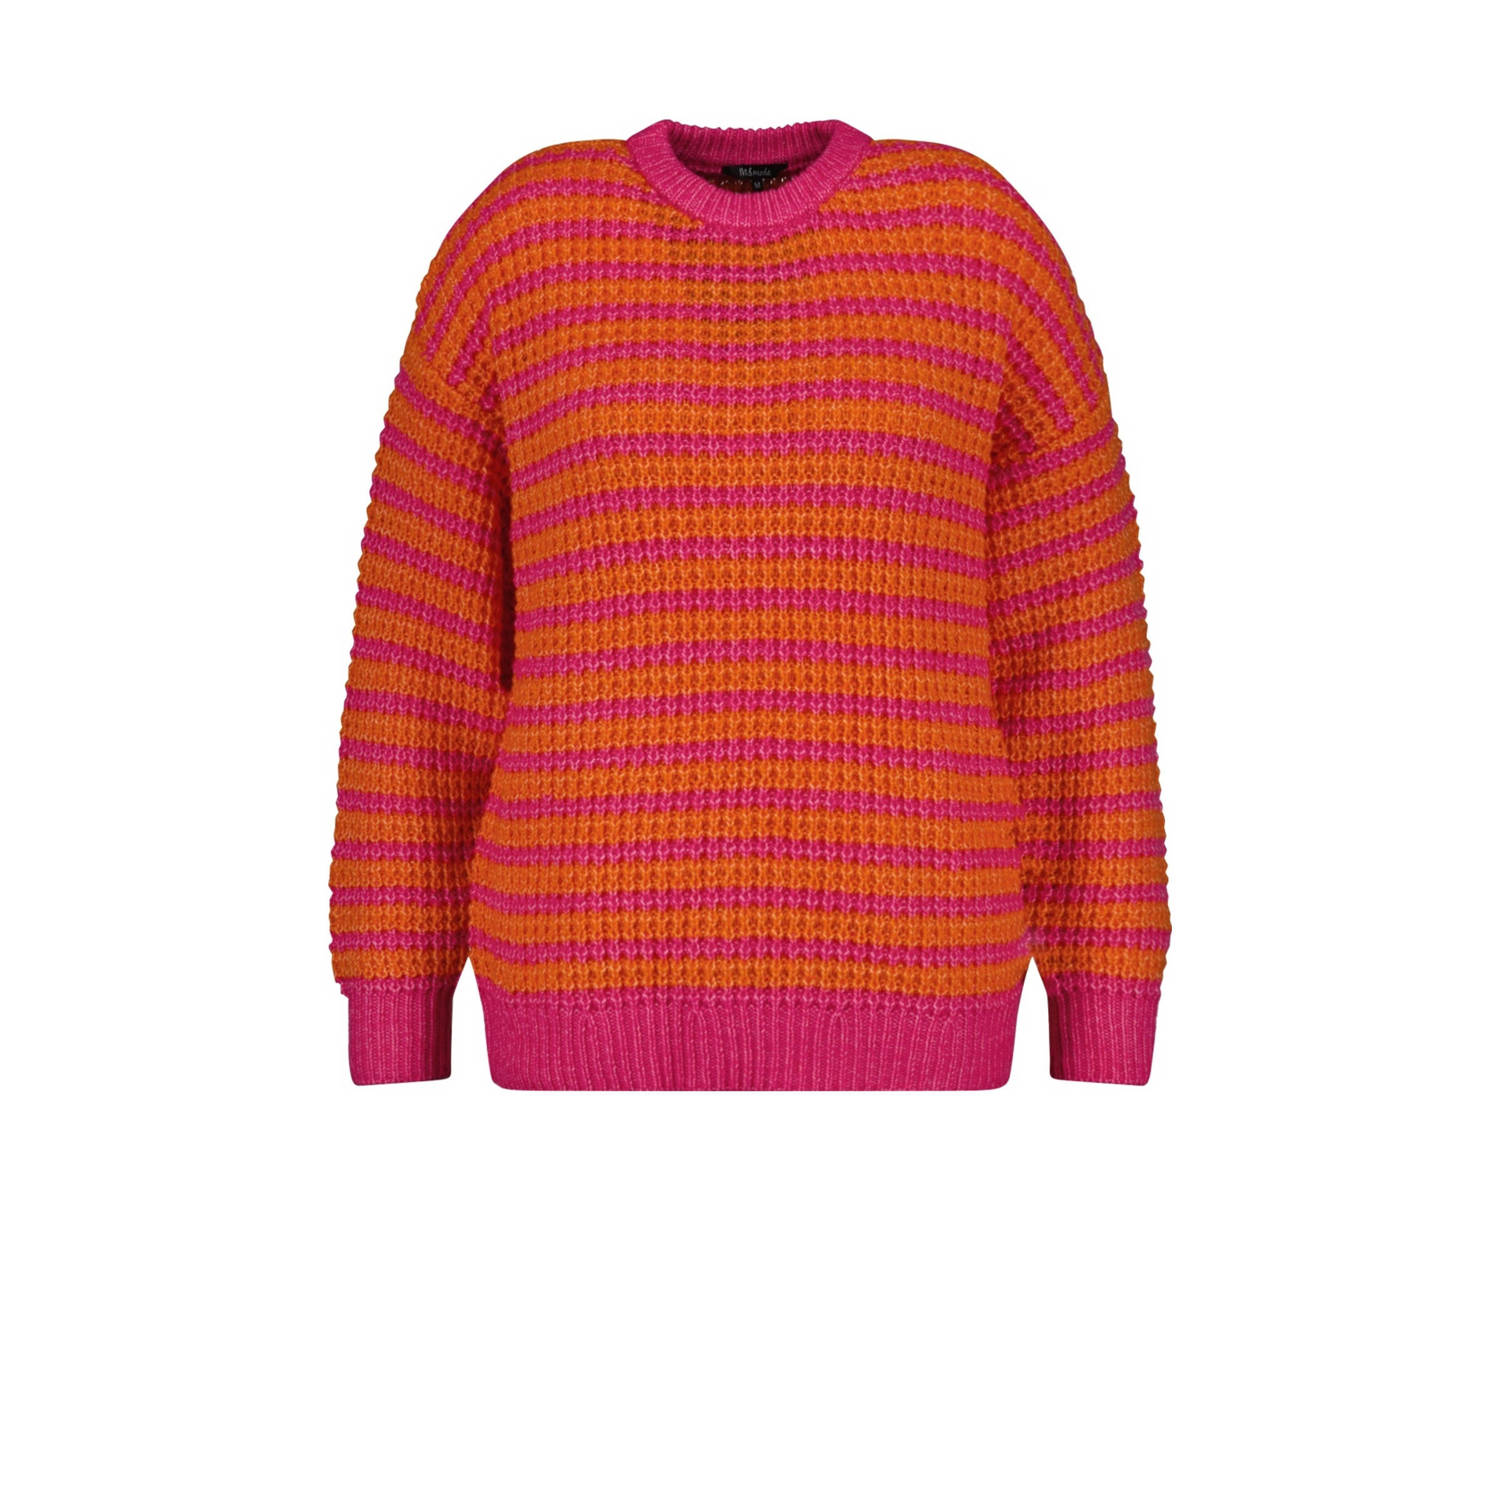 MS Mode gestreepte grofgebreide trui met wol en ingebreid patroon oranje roze